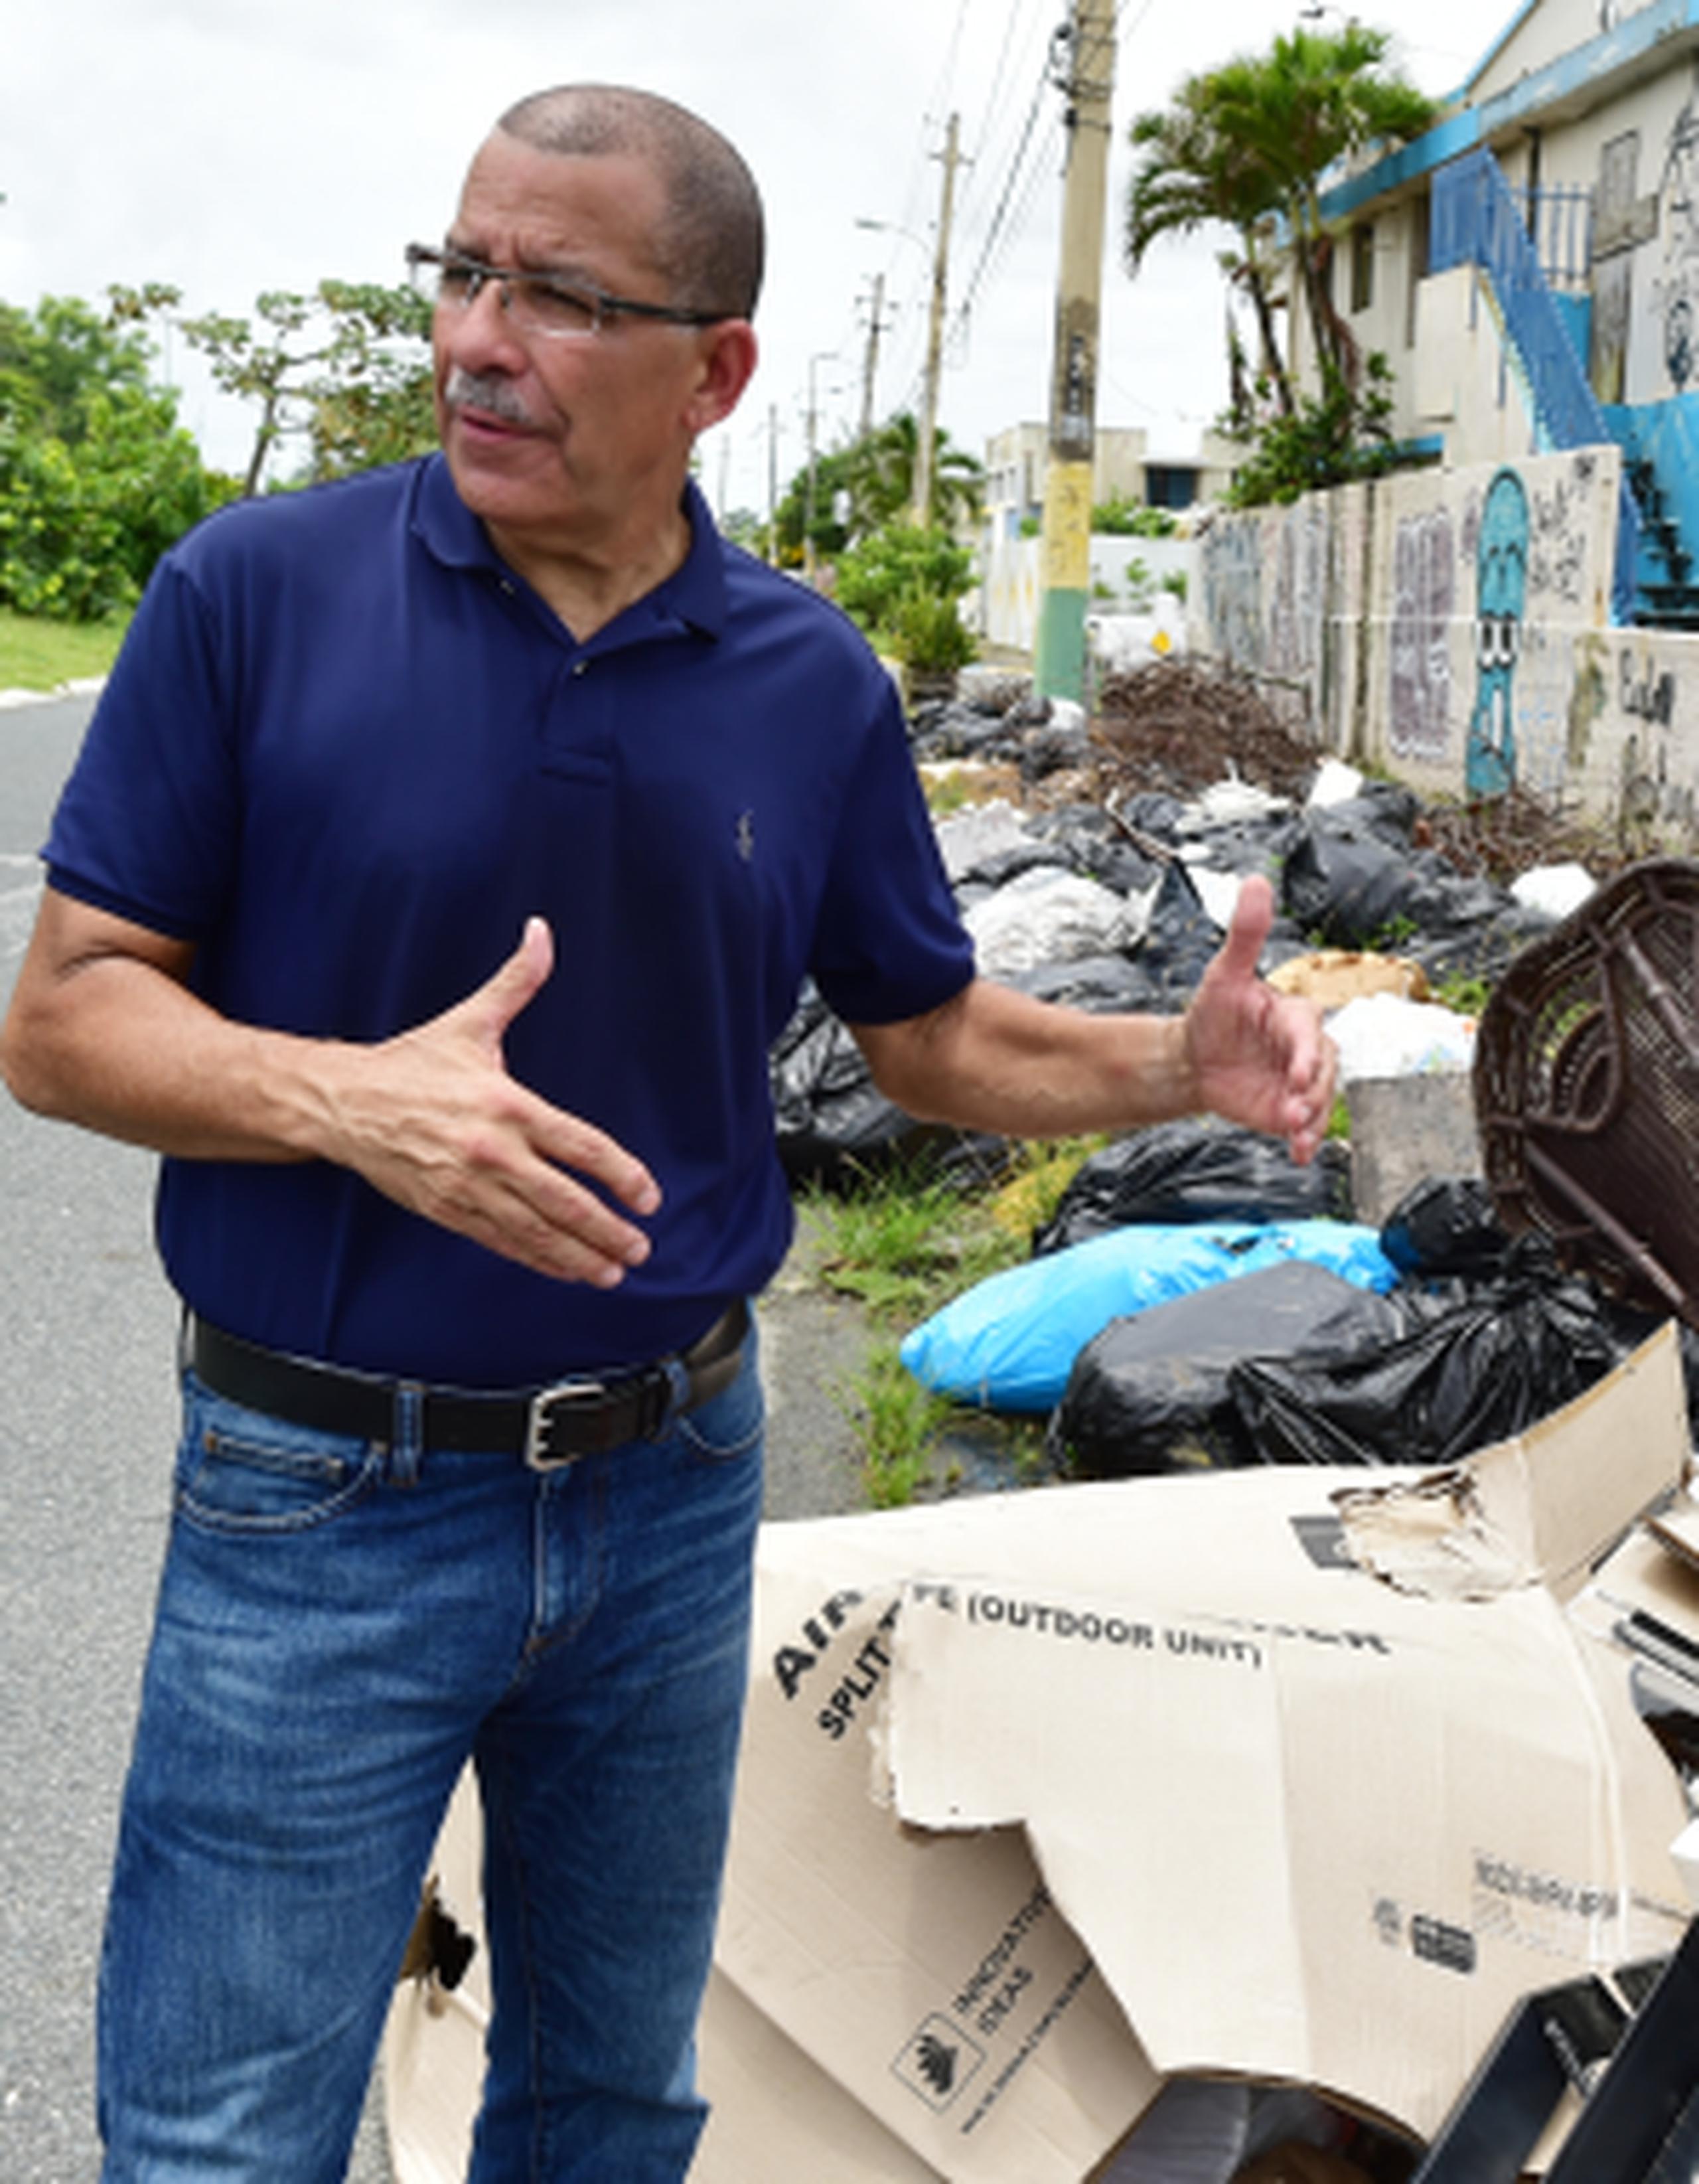 La meta de “Betito” Márquez en Toa Baja es lograr normalizar el recogido de basura en el pueblo. (Archivo)